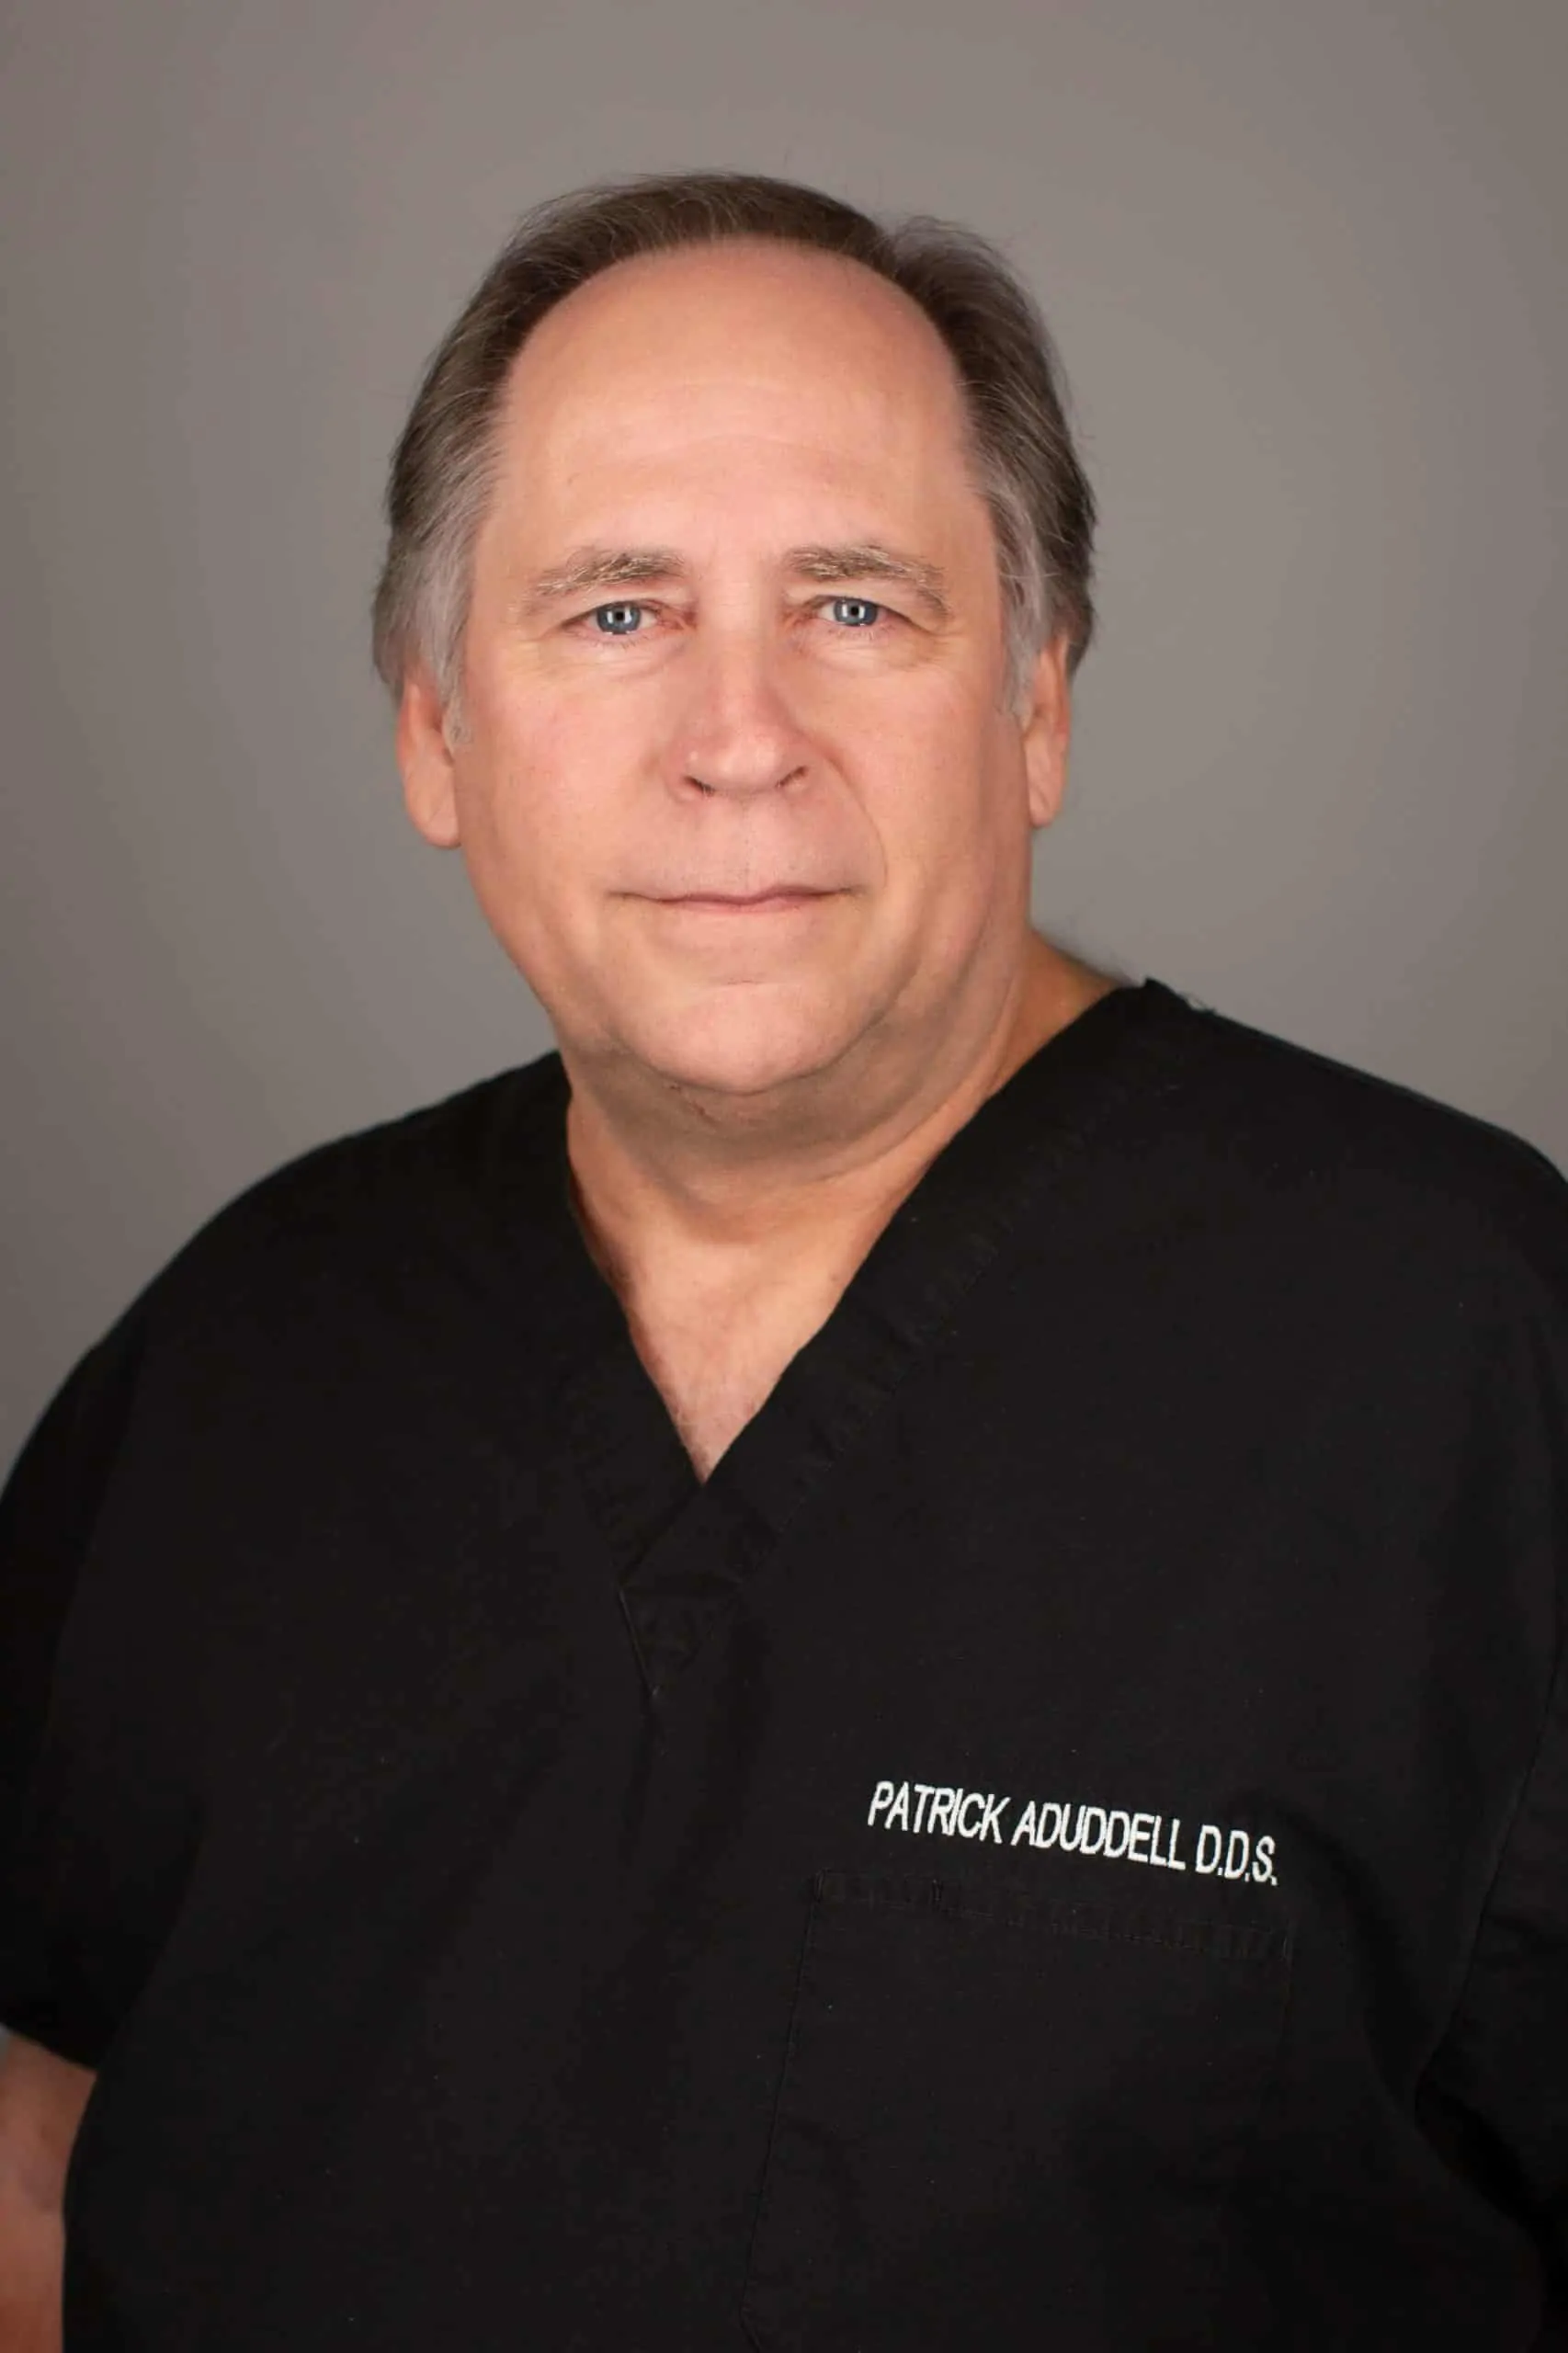 Dr. Patrick Aduddell at Aduddell Dentistry